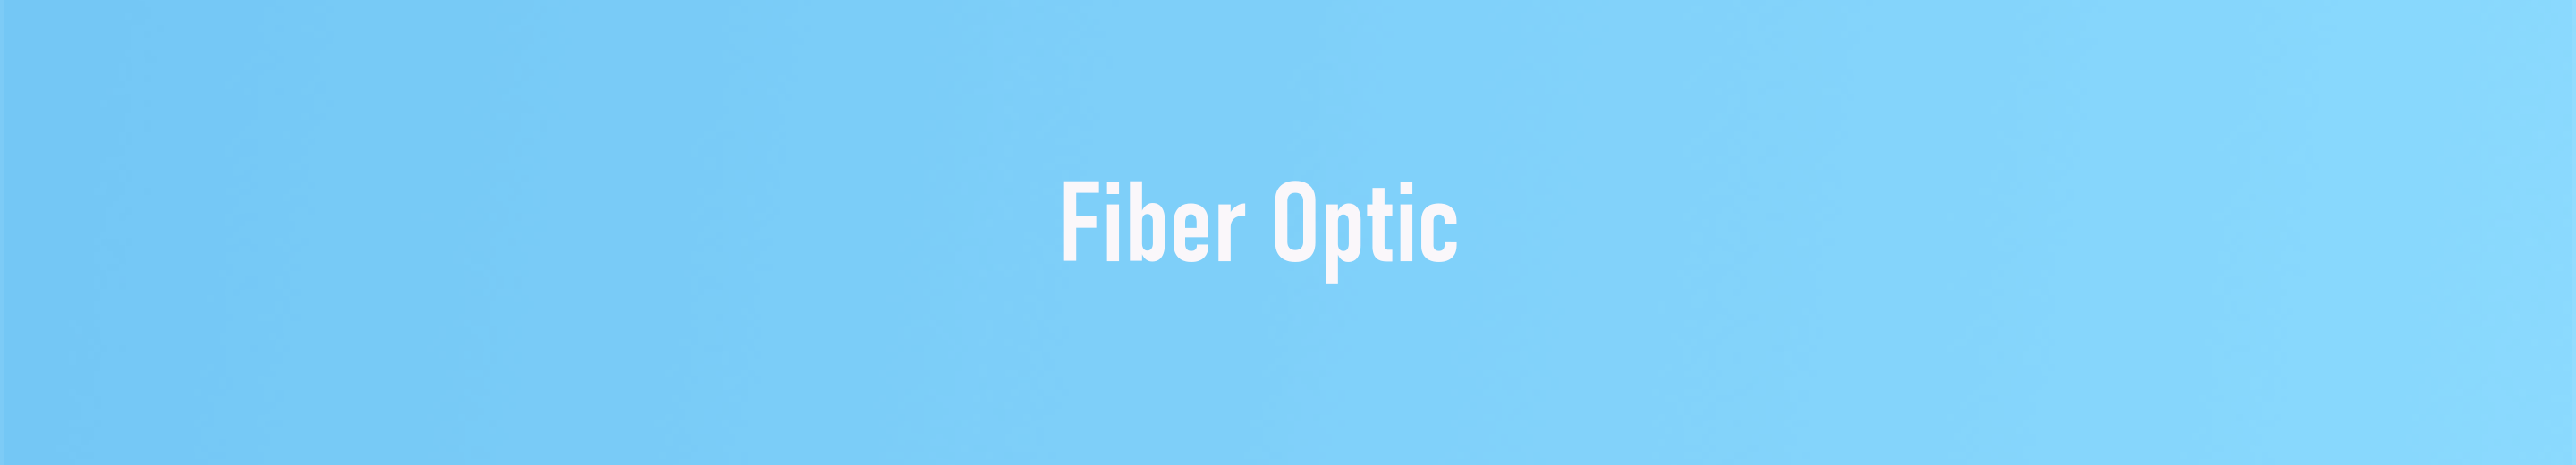 fiber optic banner